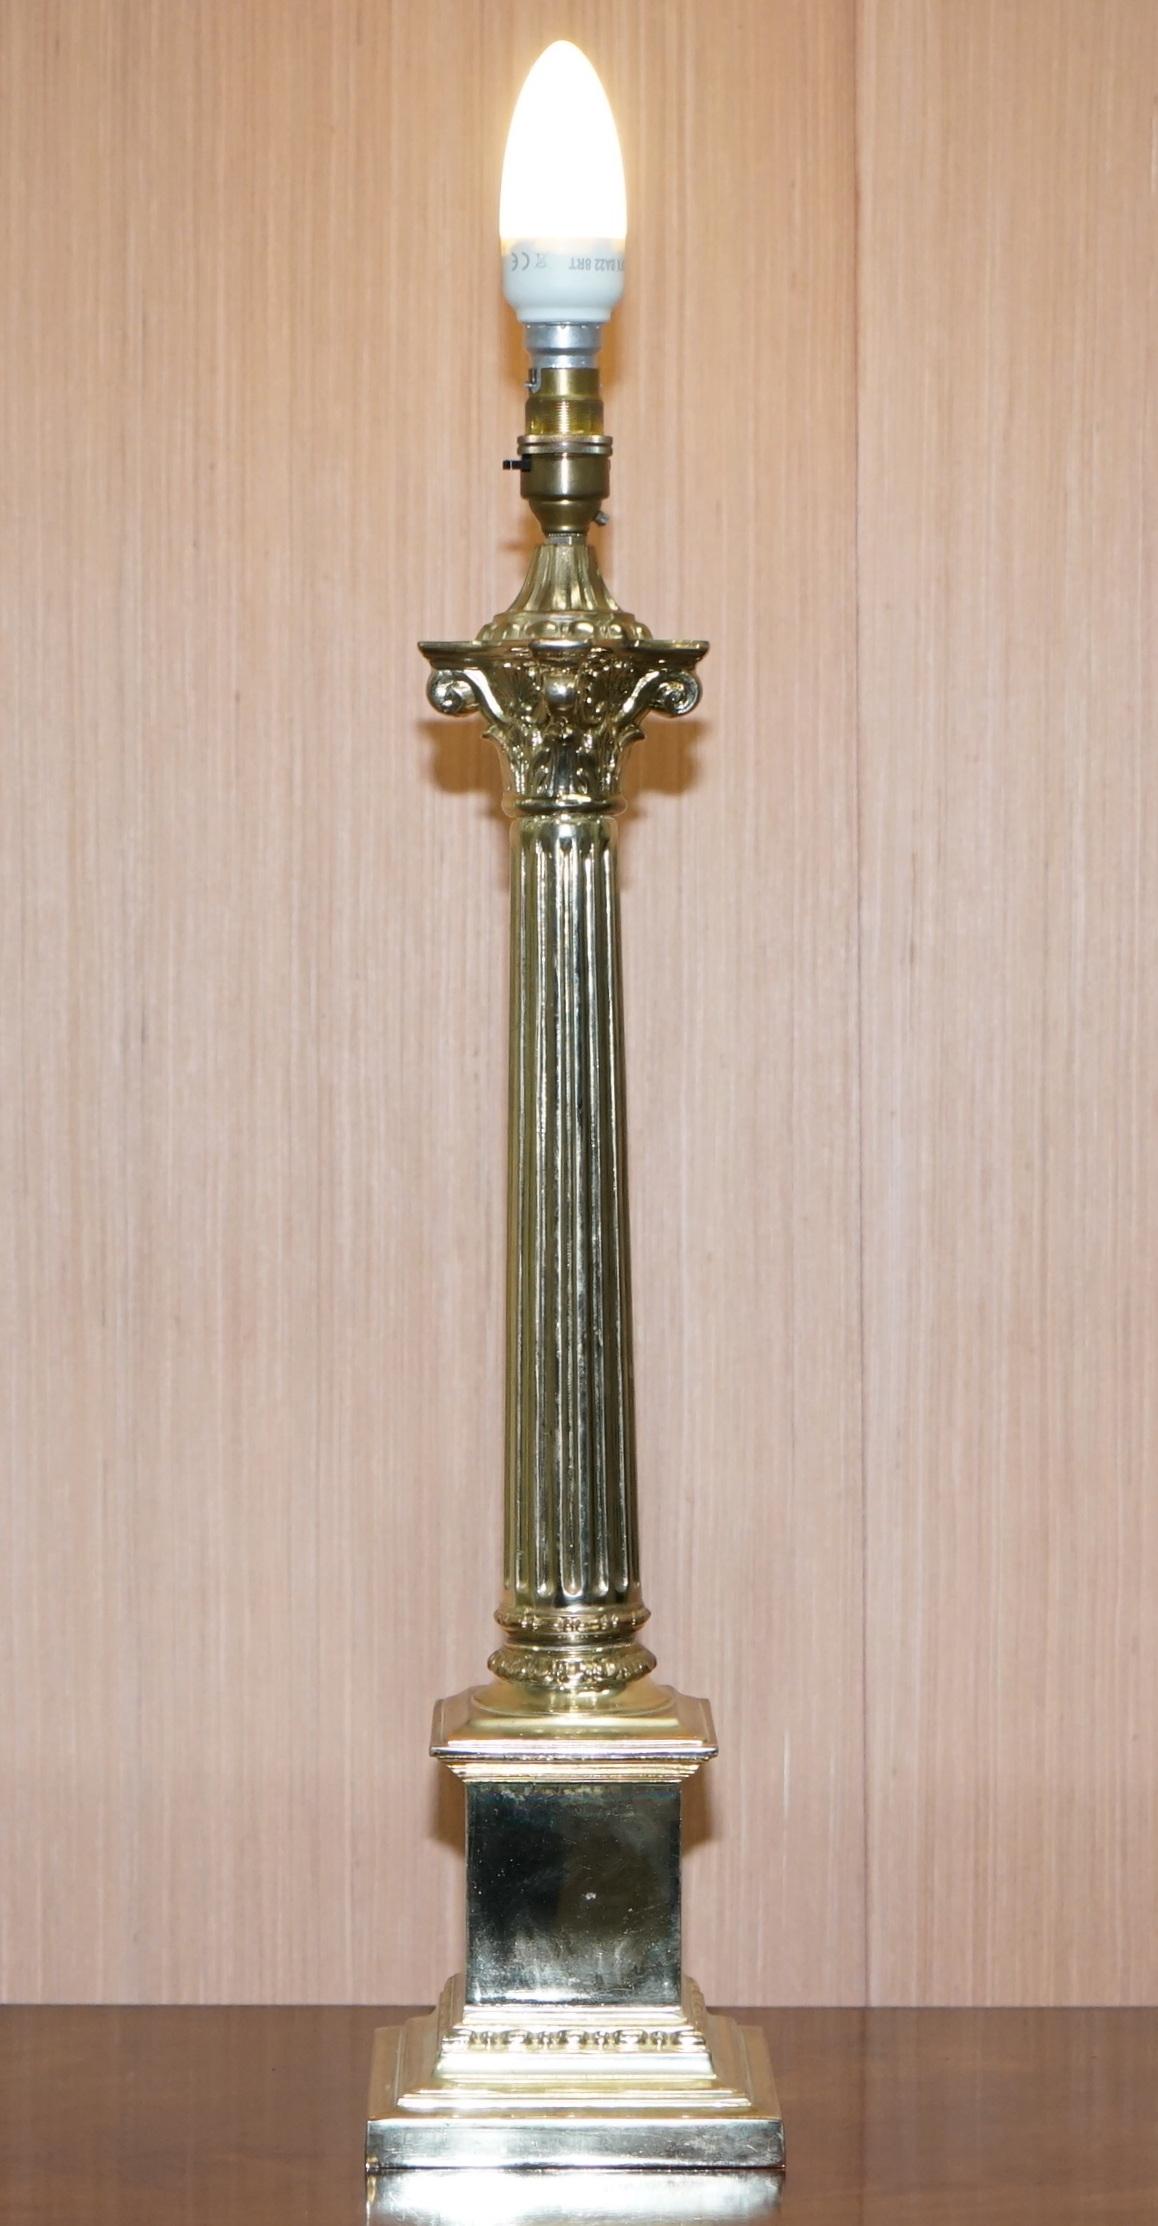 Wir freuen uns, diese wunderschöne korinthische Säulenlampe aus poliertem Messing zum Verkauf anbieten zu können.

Ein sehr gut aussehendes und dekoratives Stück, der Stil ist ziemlich neutral, so dass es in jeder Umgebung erstaunlich aussehen